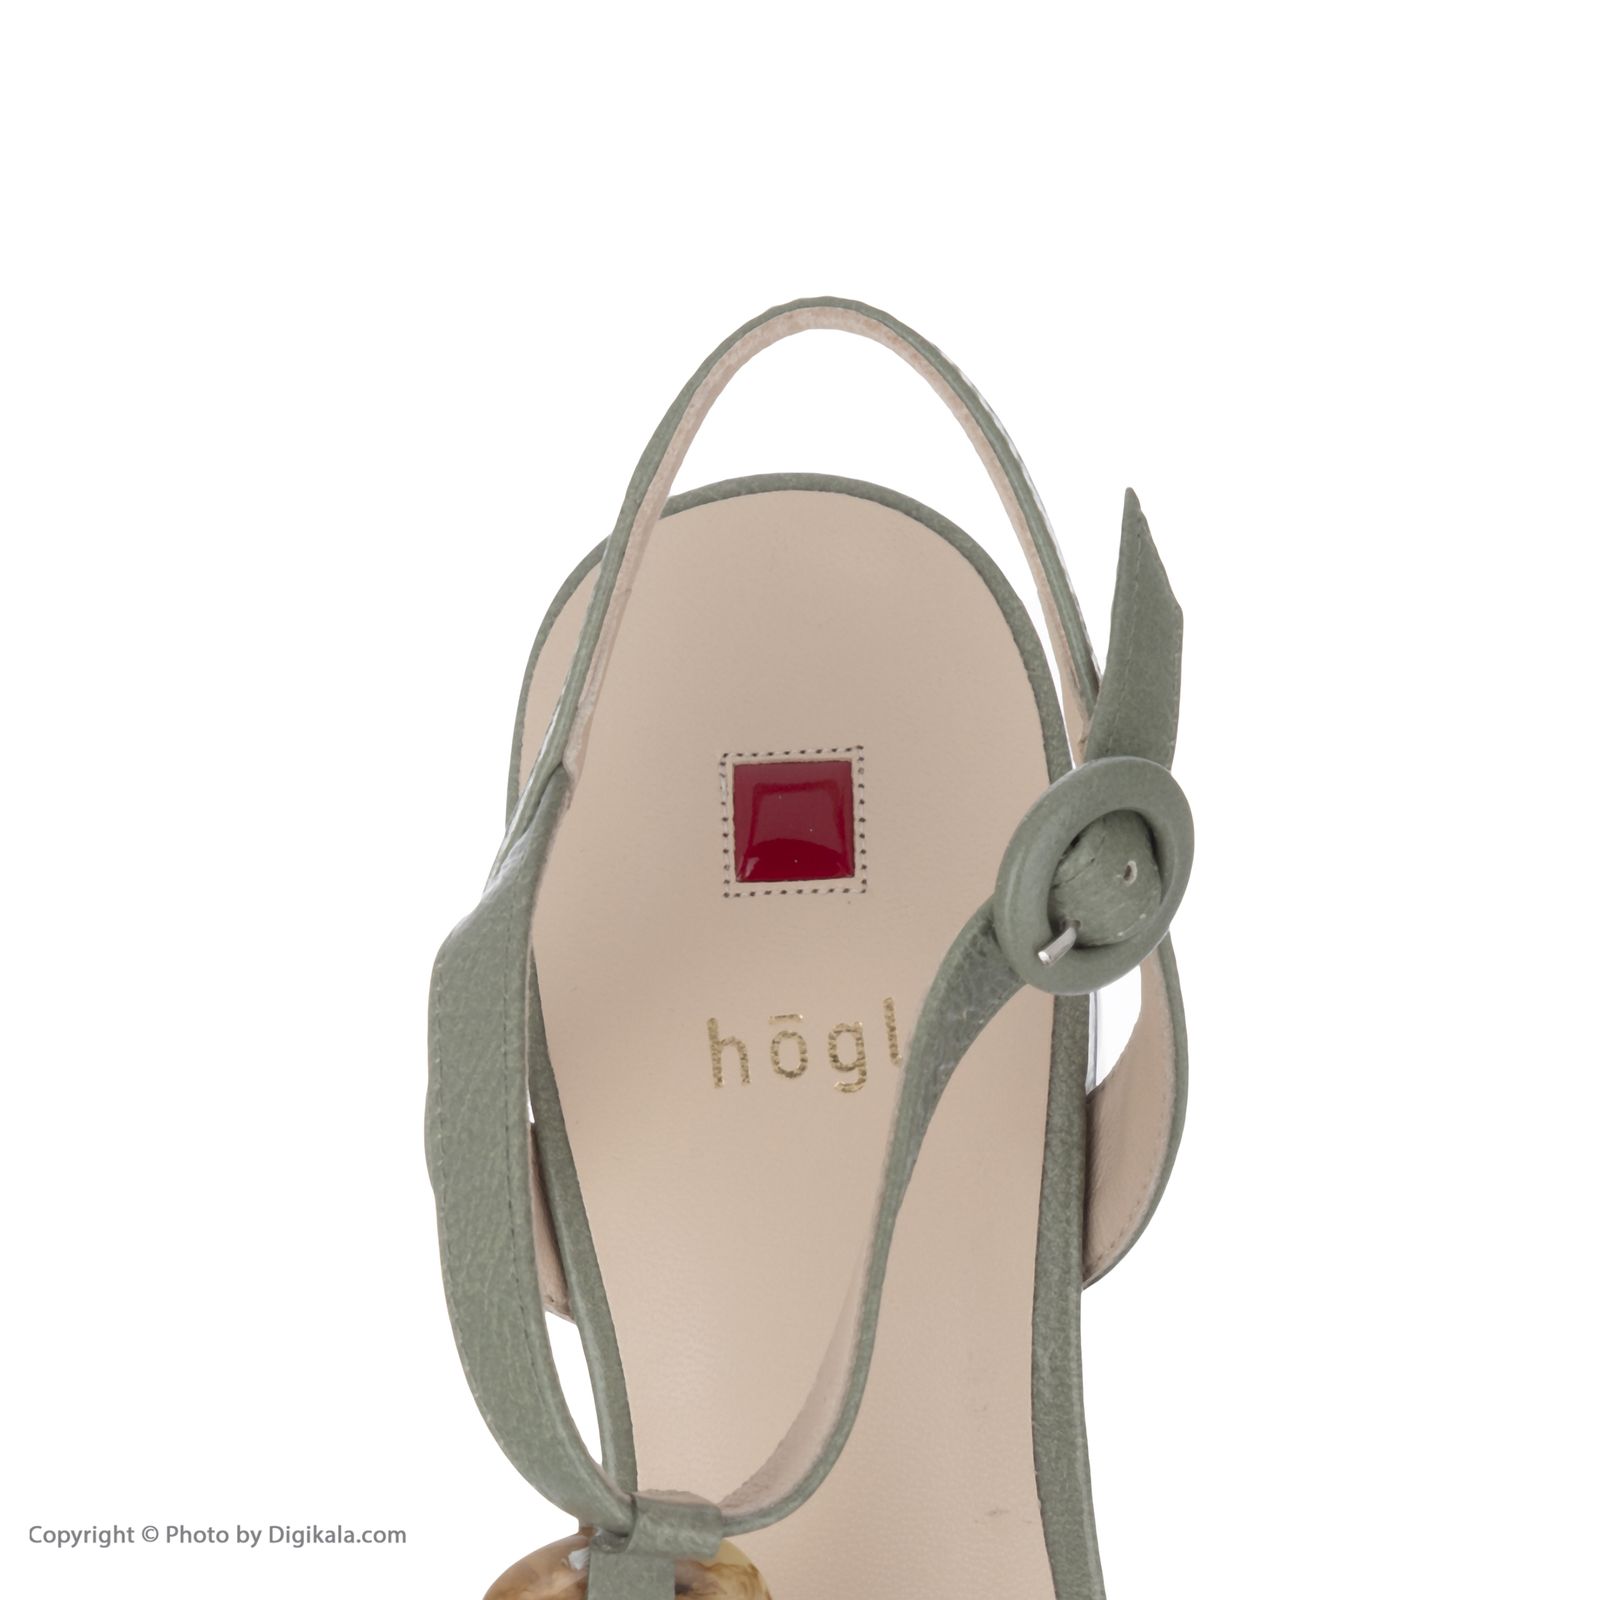 صندل زنانه هوگل مدل 9-105721-5100 -  - 7